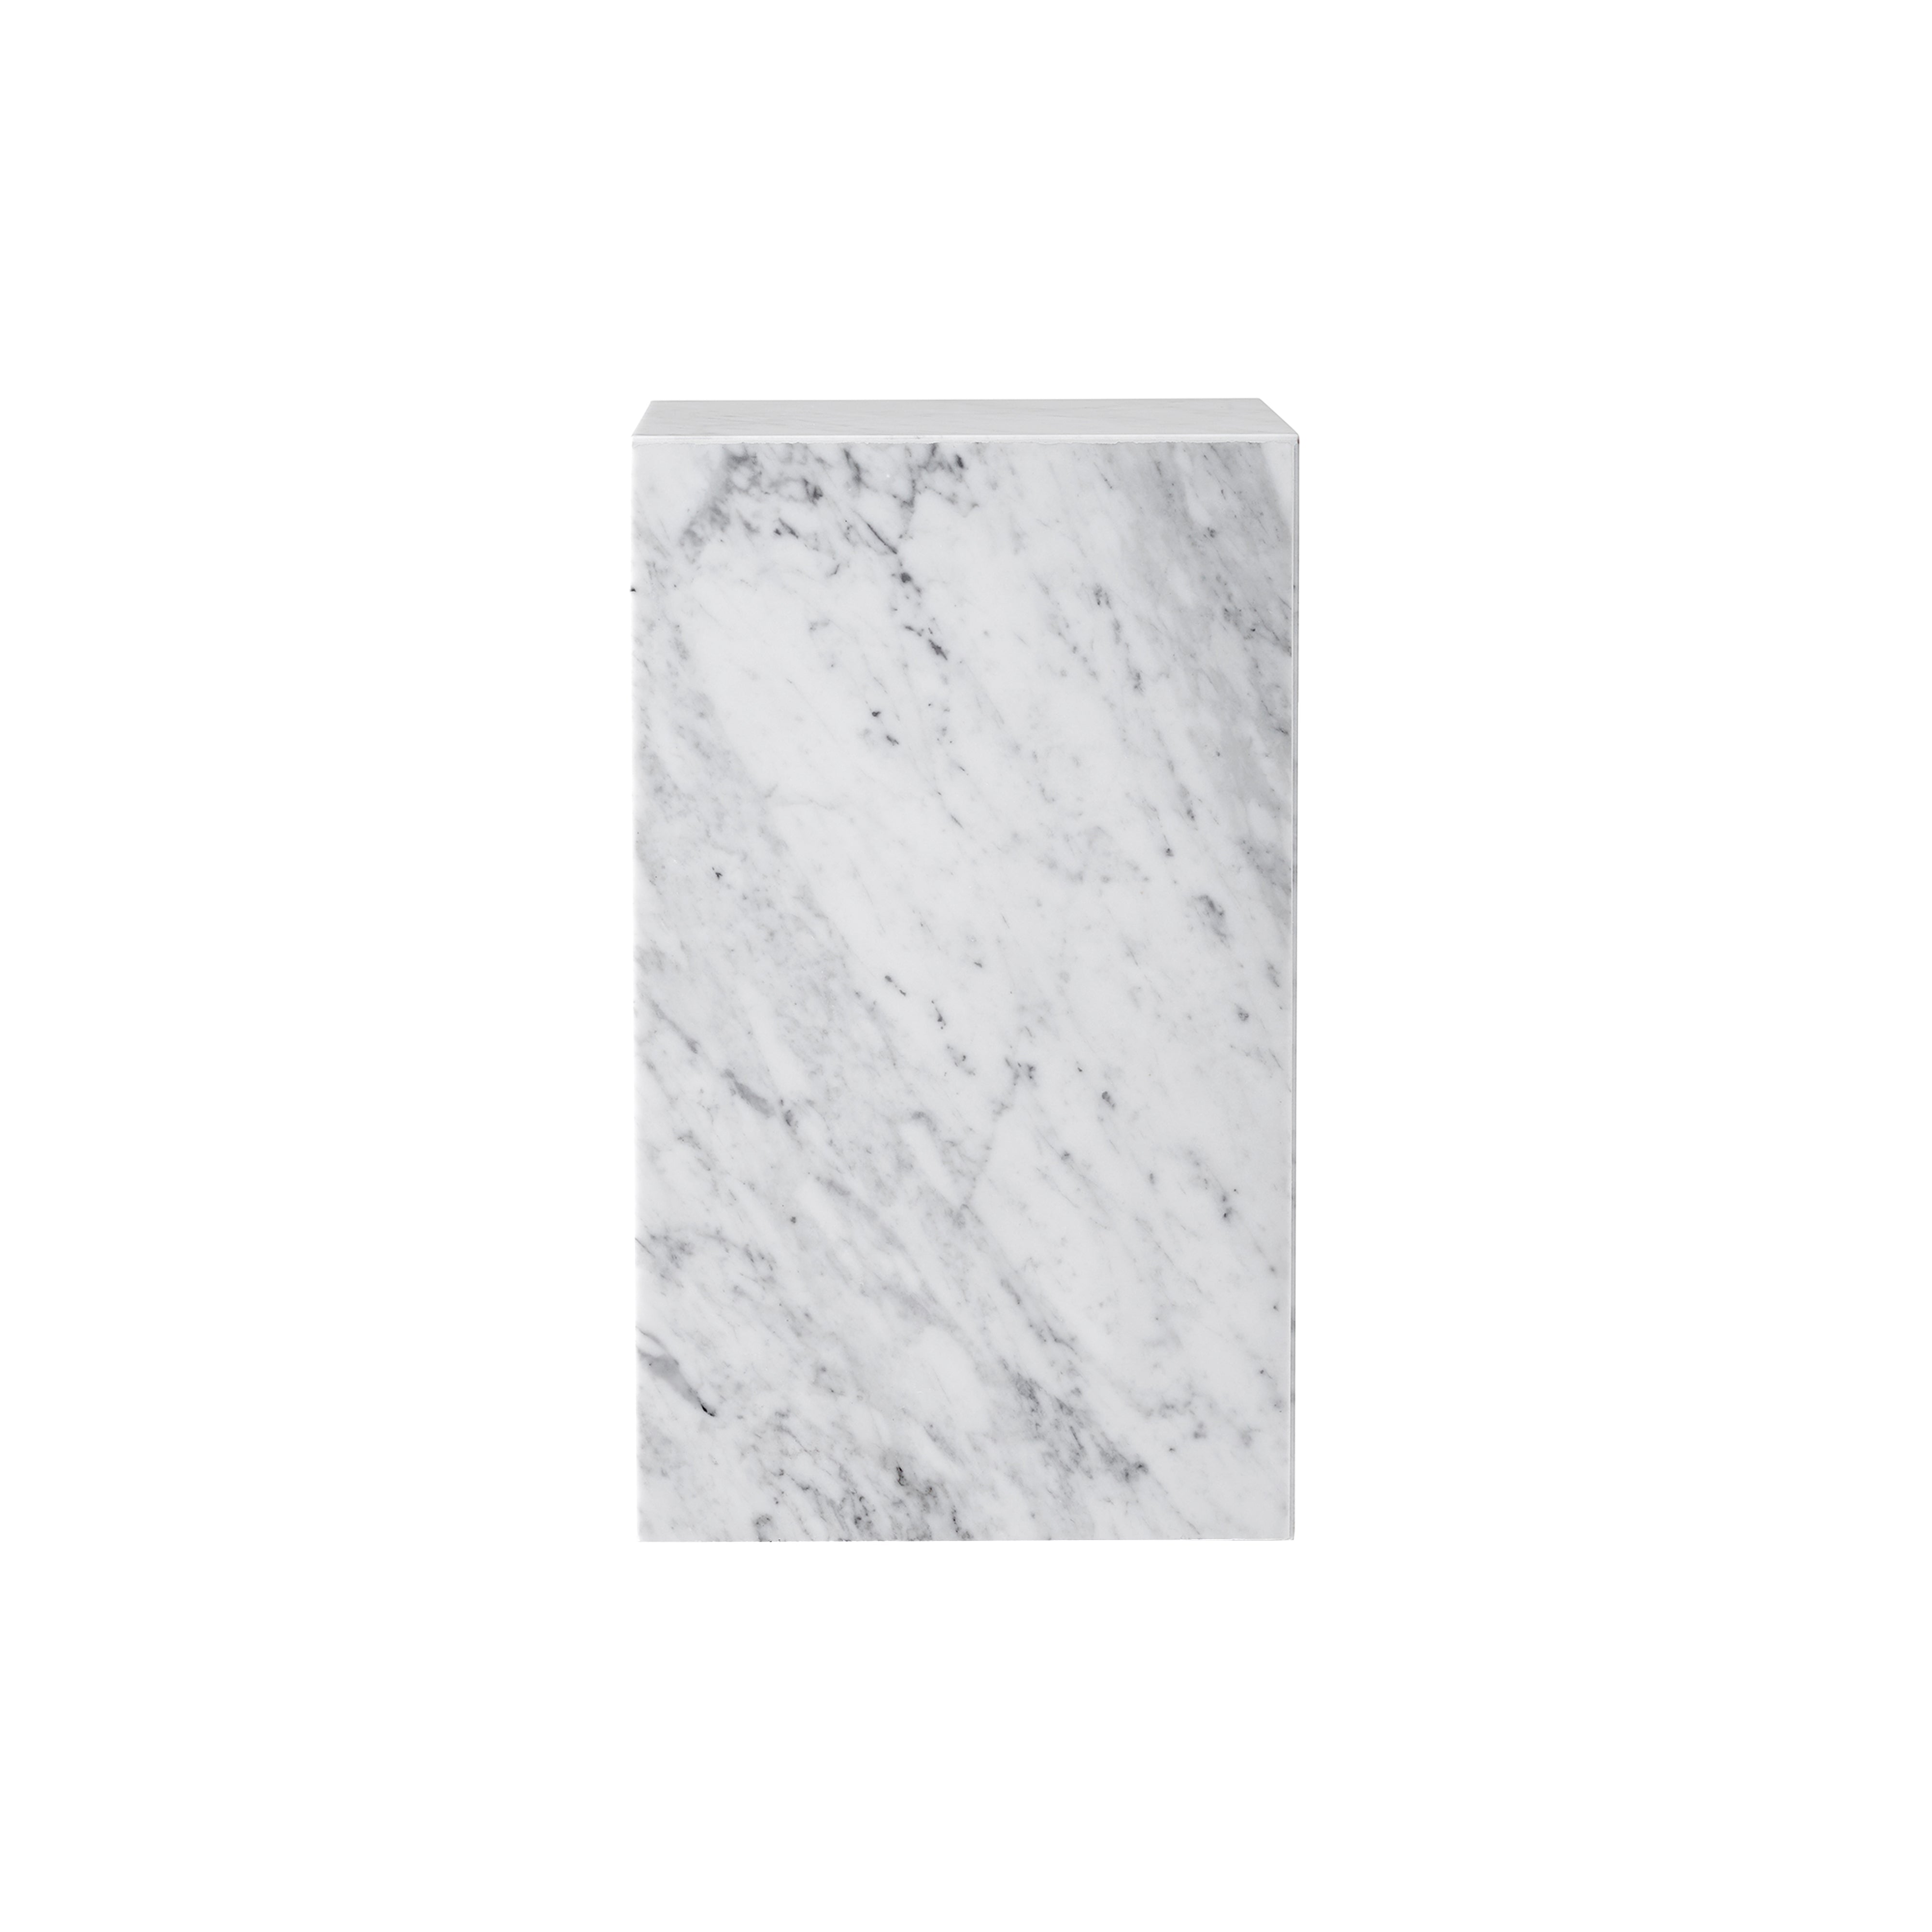 Plinth Podium: Tall + White Carrara Marble